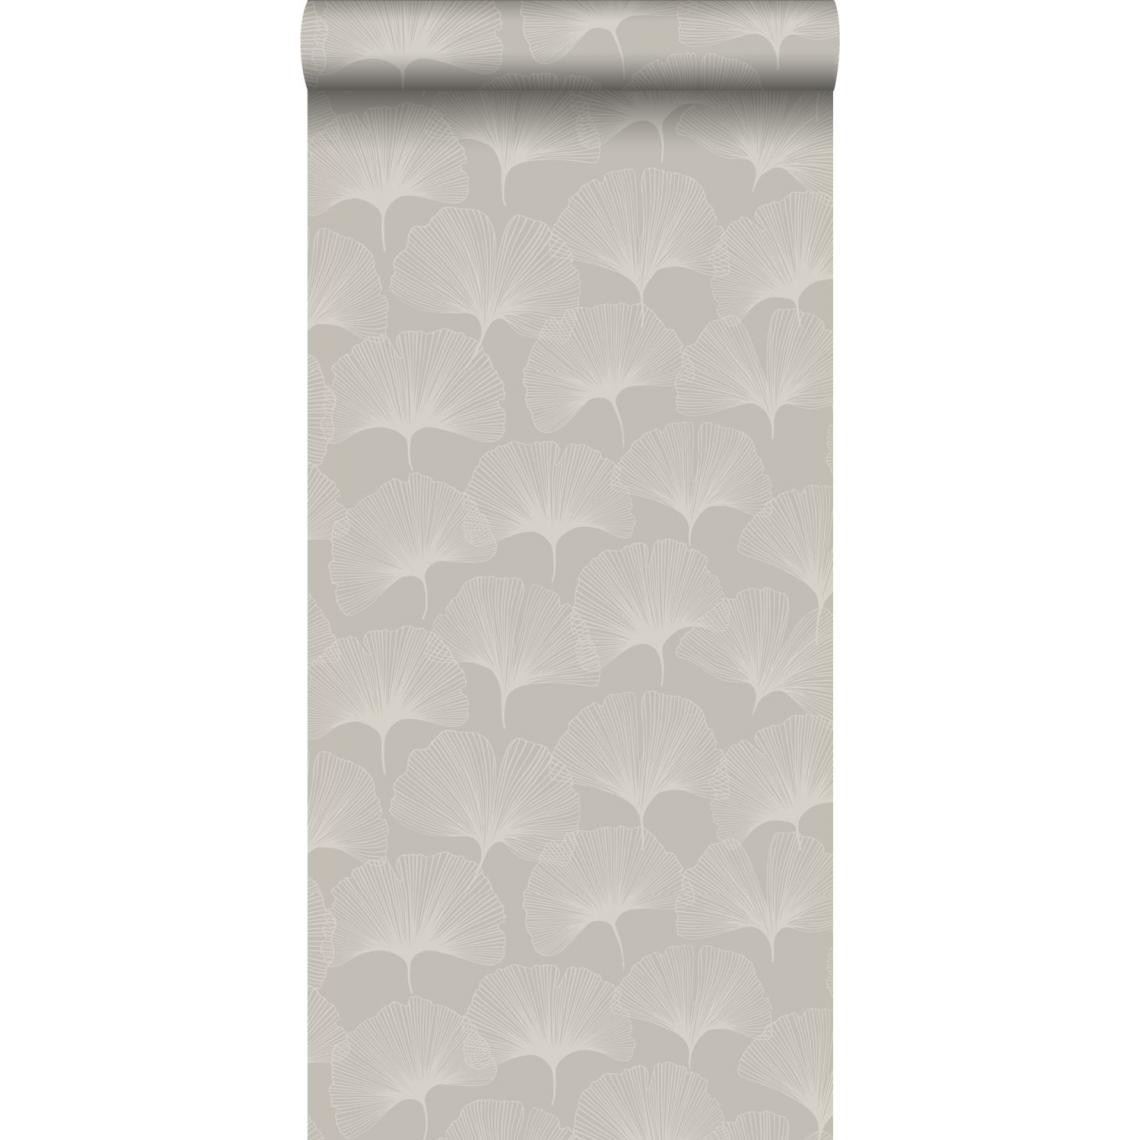 Origin - Origin papier peint feuilles de ginkgo gris chaud grisé brillant - 347749 - 0.53 x 10.05 m - Papier peint